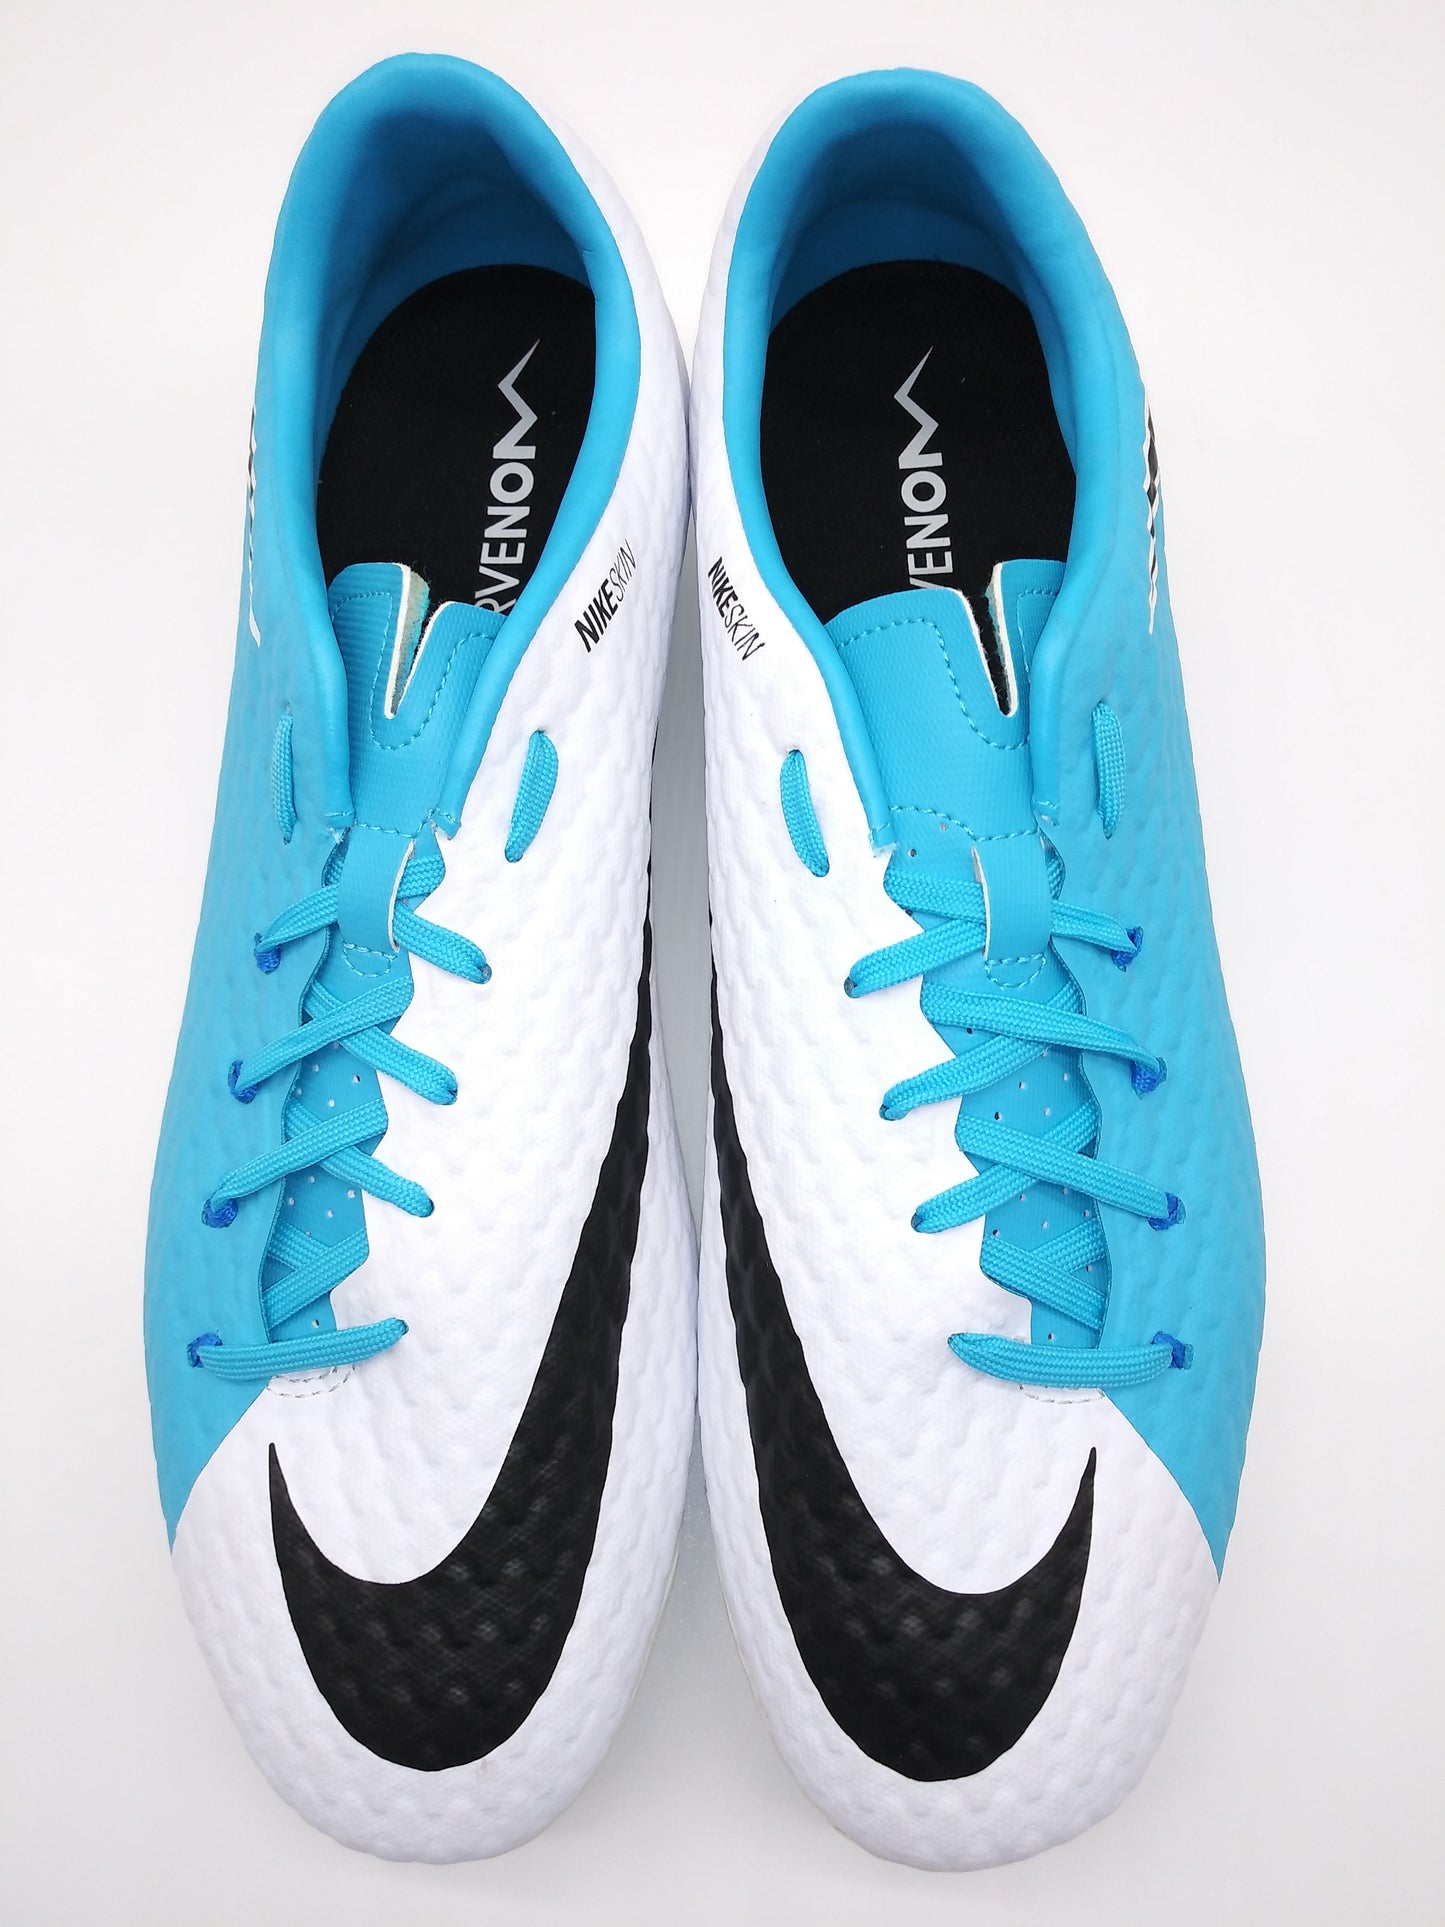 Nike Hypervenom Phelon lll FG White Blue